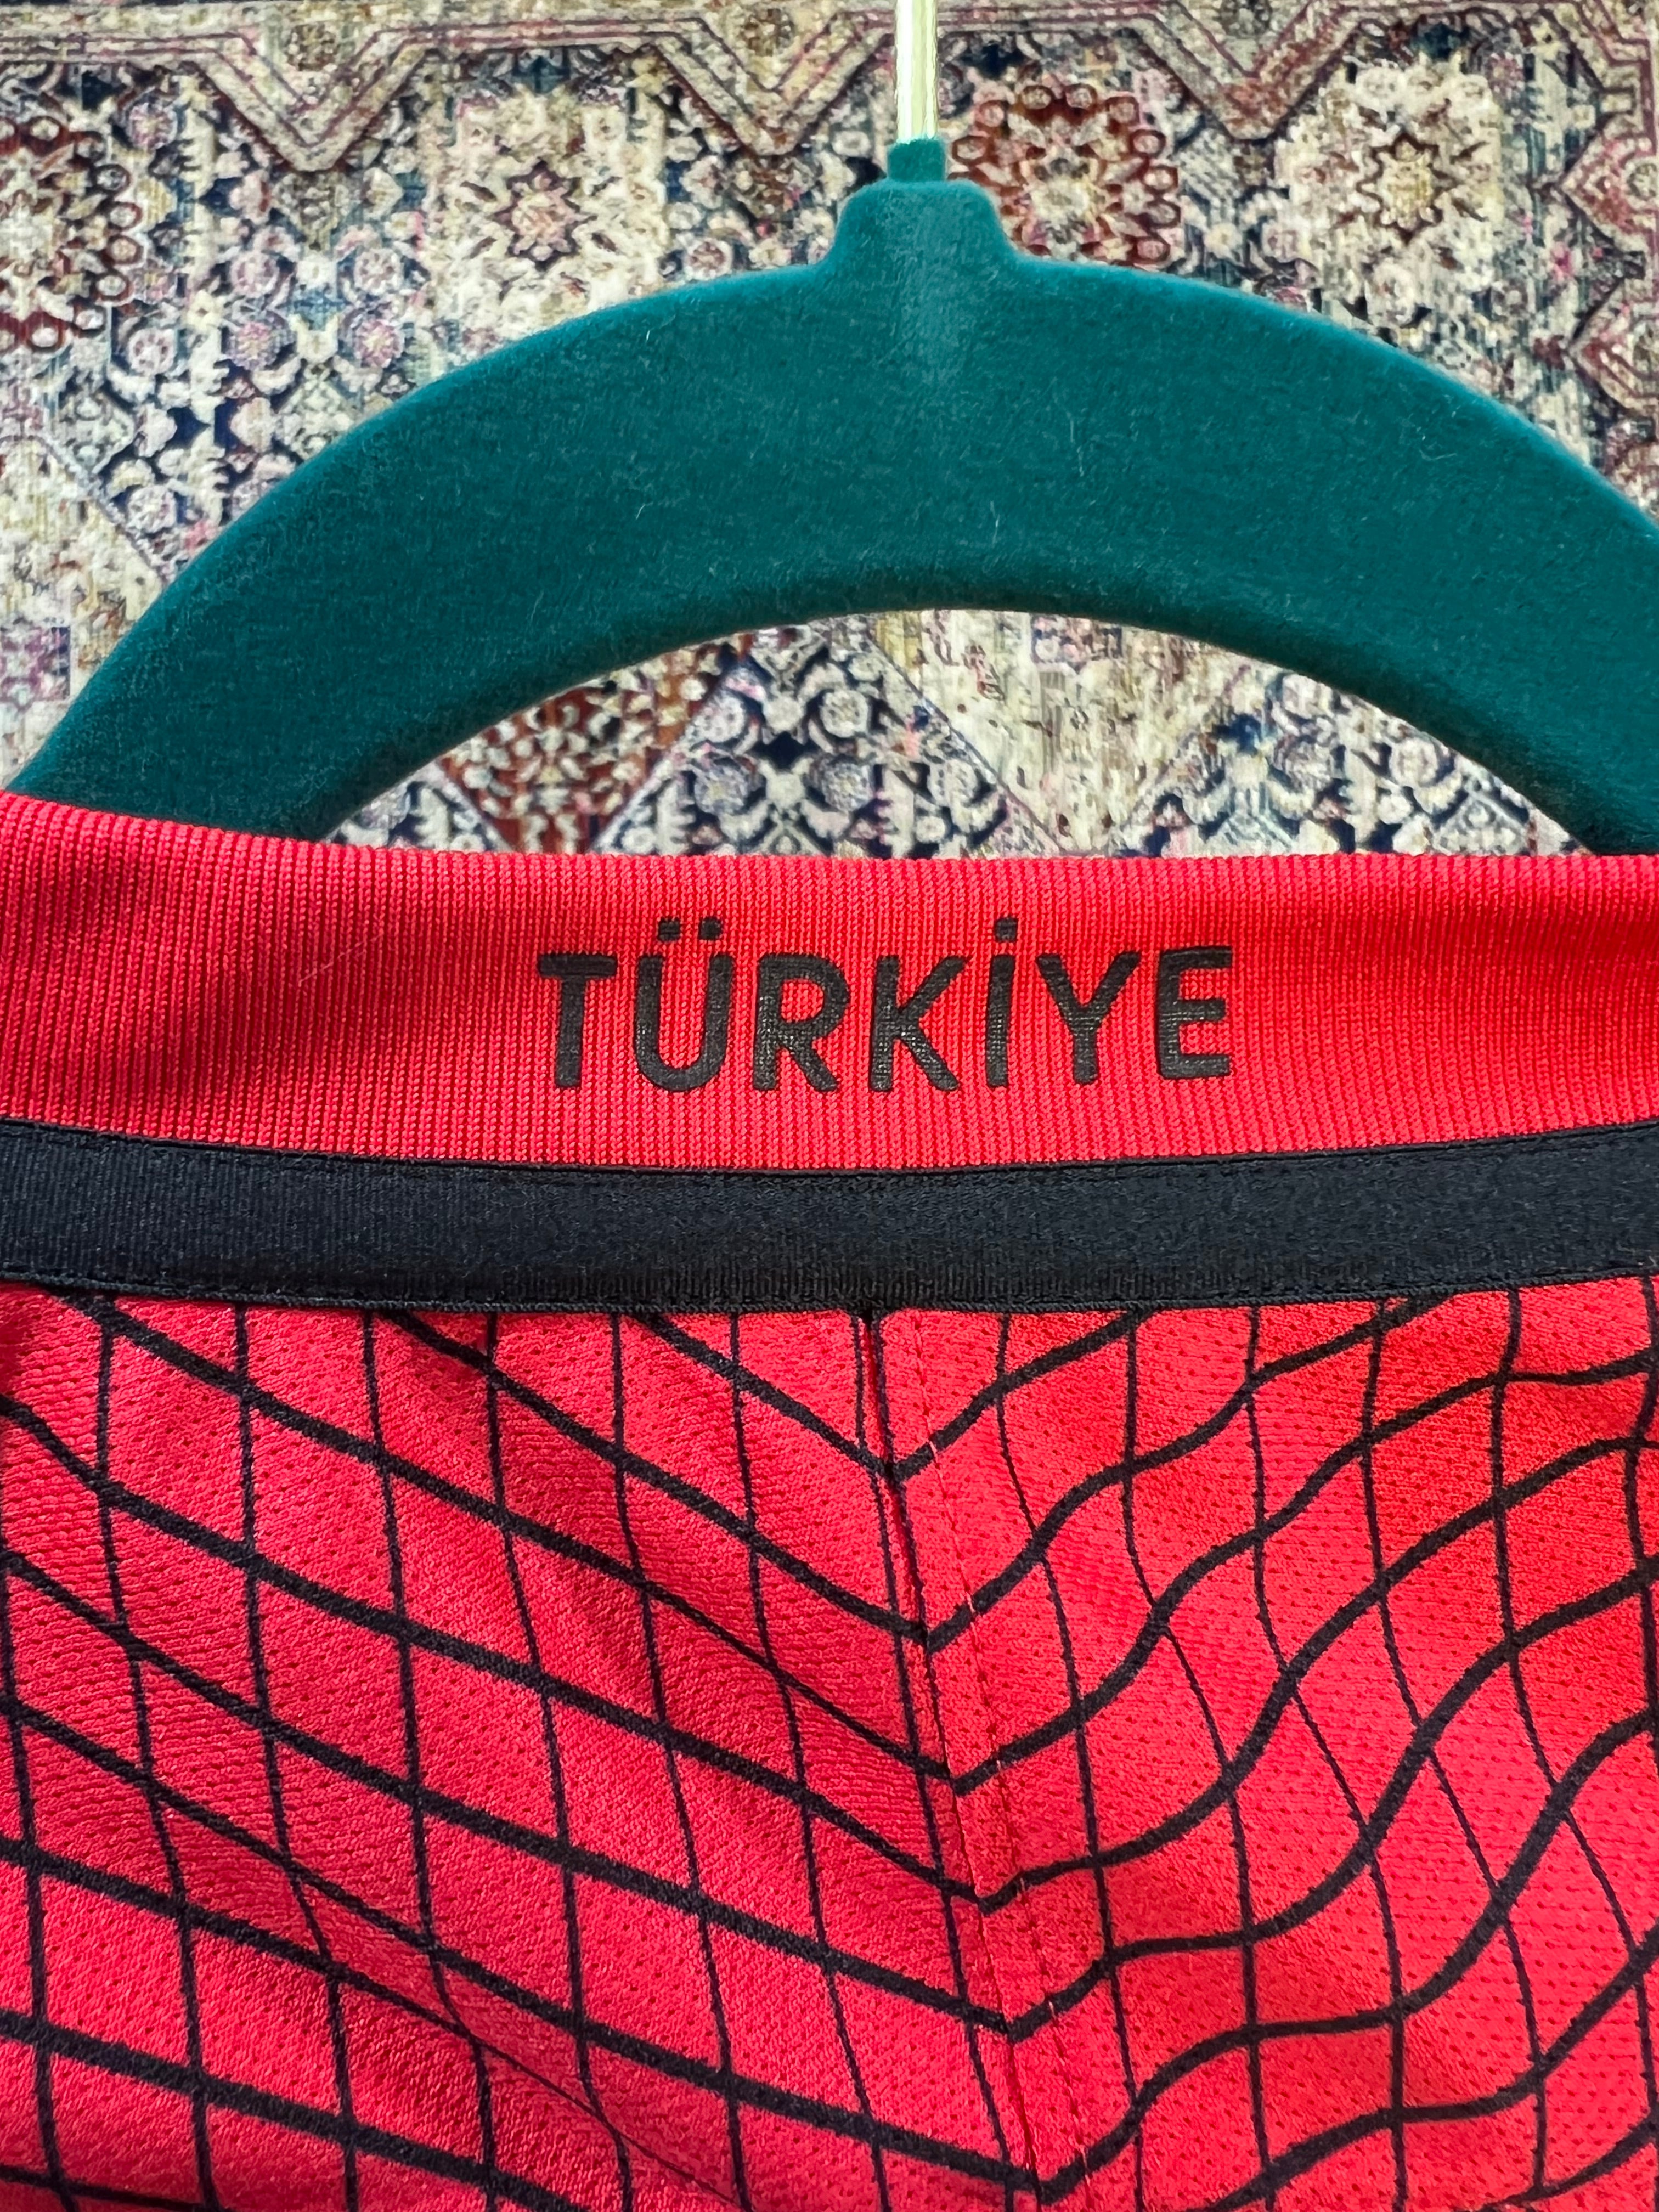 Nike Turkey Soccer Jersey Sz L